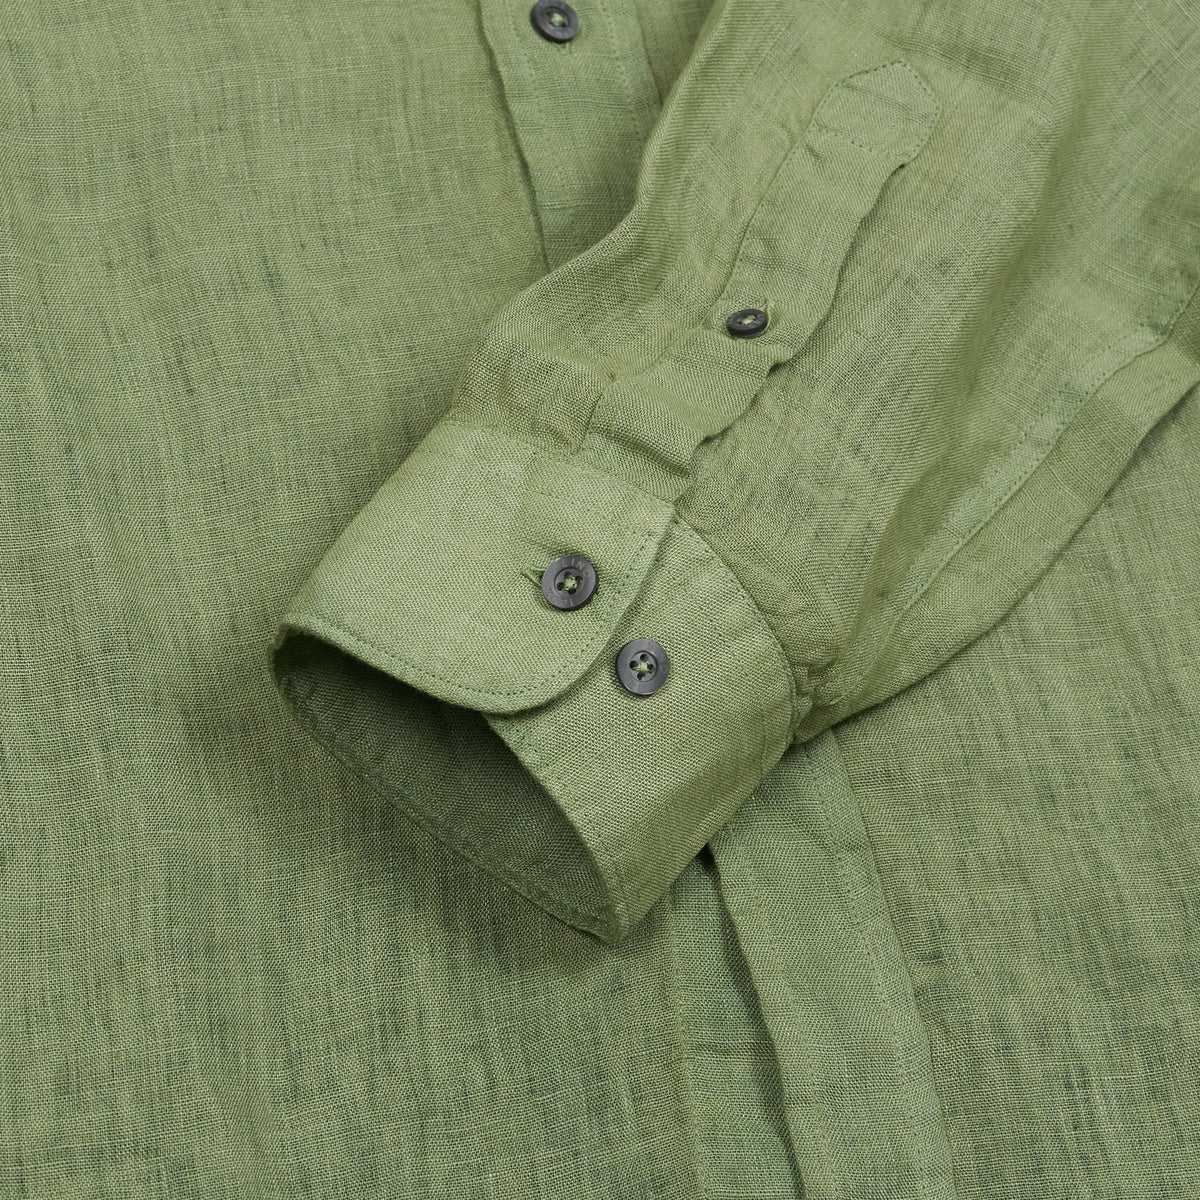 120% Lino Men Long Sleeve Linen Shirt